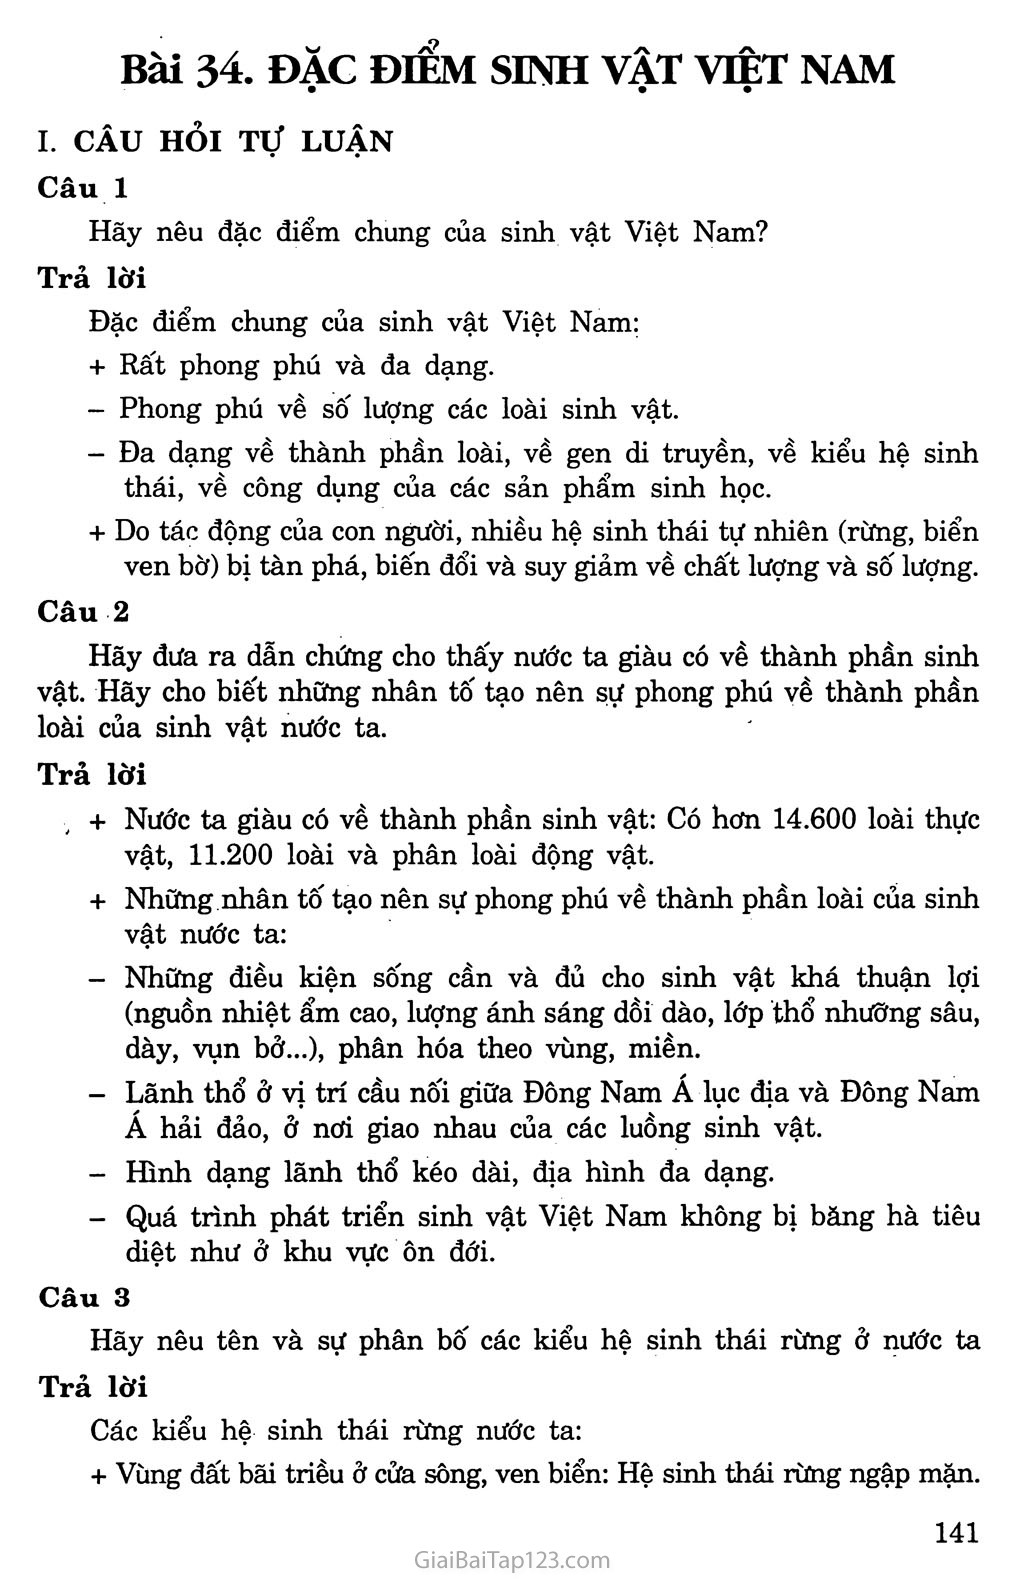 Bài 37: Đặc điểm sinh vật Việt Nam trang 1